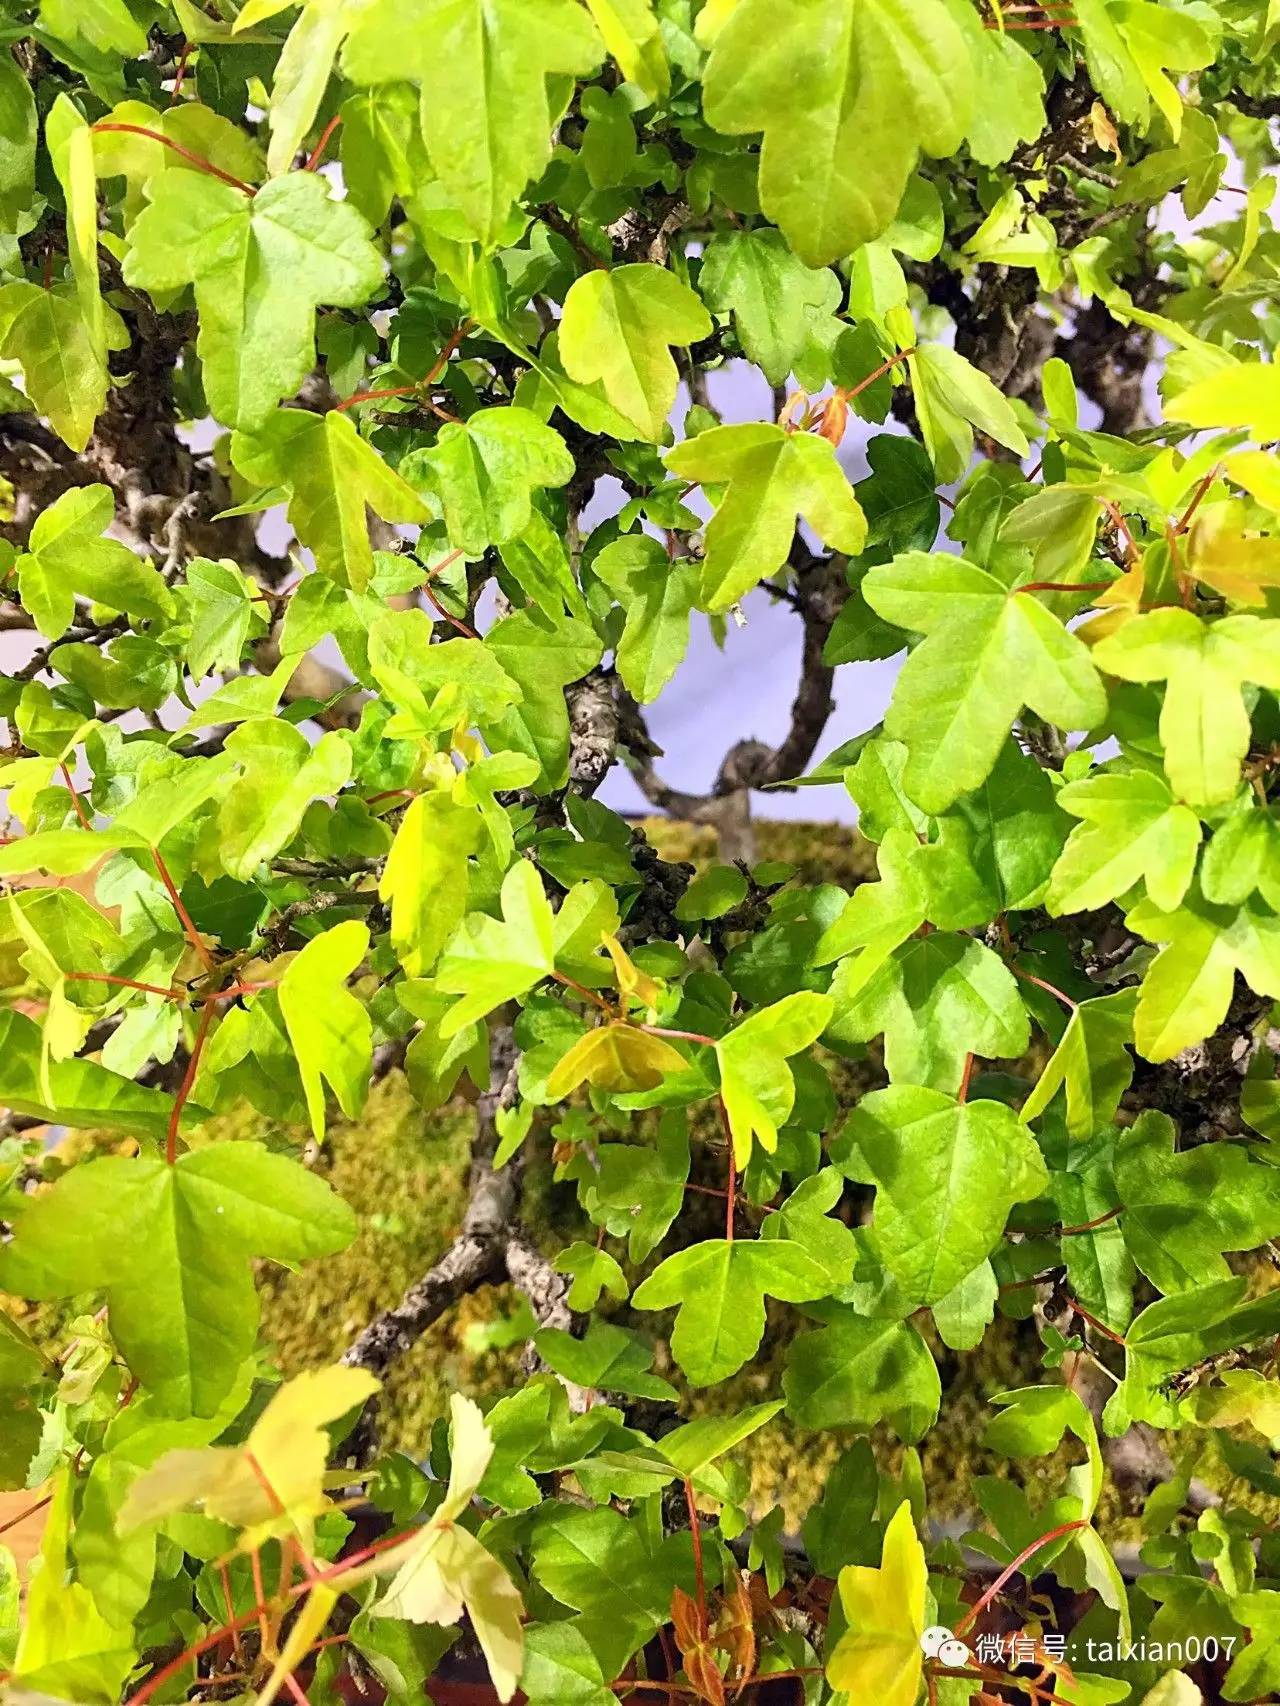 唐枫微盆景该品种三角枫叶厚,叶片蜡质厚,大夏天尽管晒 不容易晒焦叶